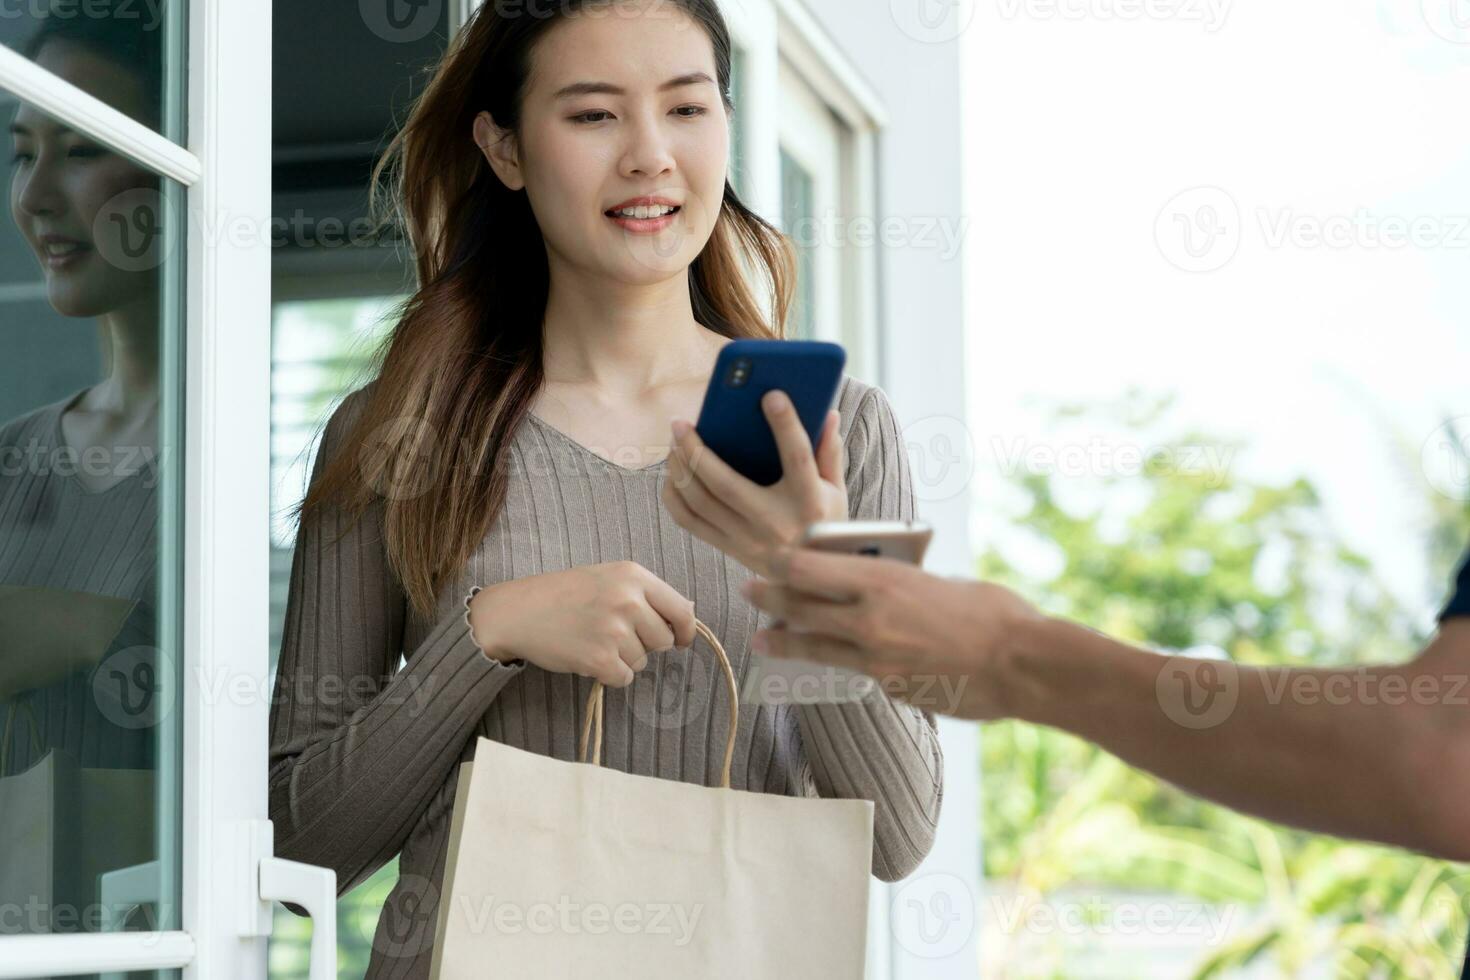 asiatische Frau mit glücklichem Lächeln scannt den QR-Code für die Bezahlung des Essens. lieferbote senden liefern express. Online-Shop, Papierbehälter, Imbiss, Postbote, Lieferservice, Pakete, elektronisches Geld, digitale Überweisung foto